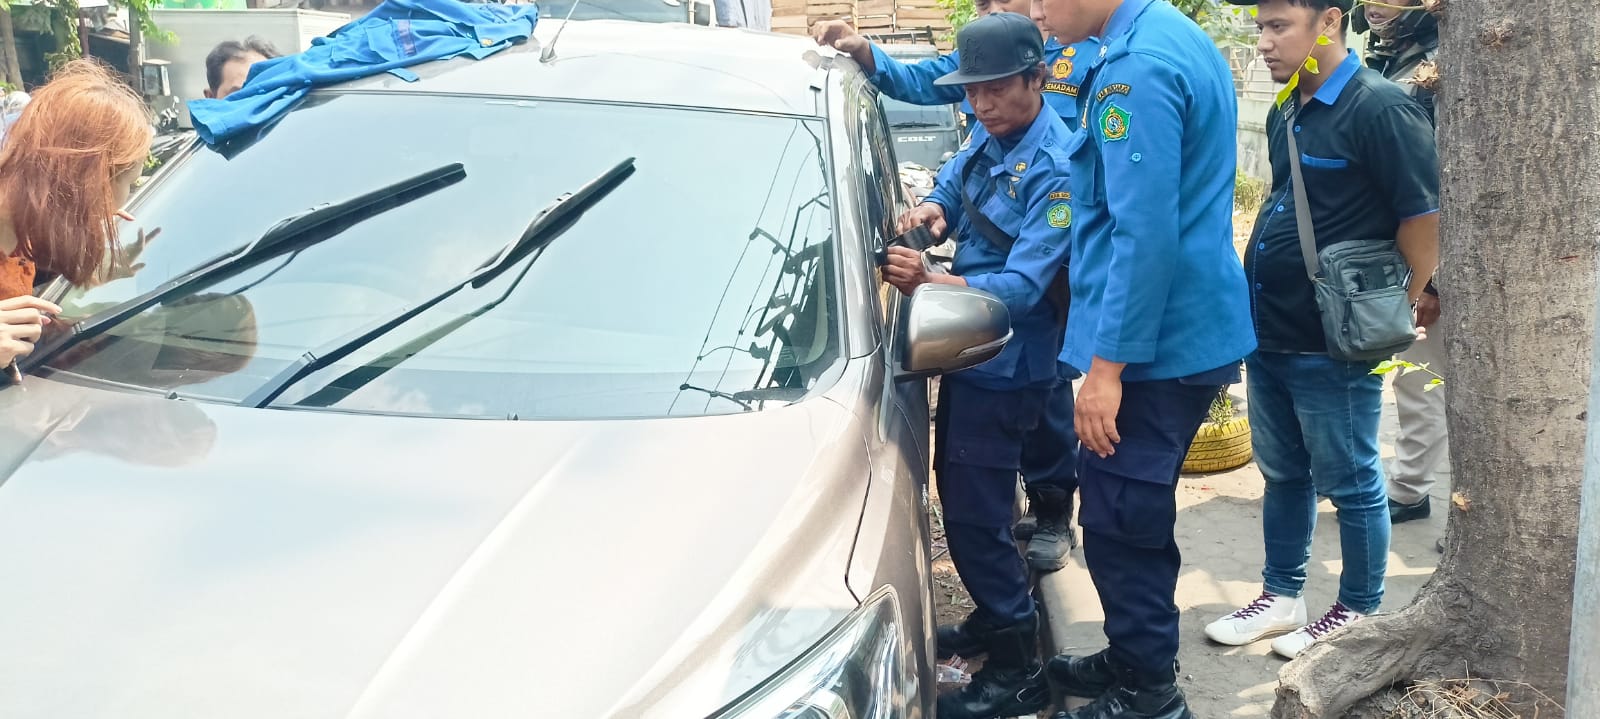 Tim Rescue BPBD Sidoarjo Melakukan Evakuasi anak terkunci di dalam mobil di Jl. Setia Budi, Kecamatan Krian